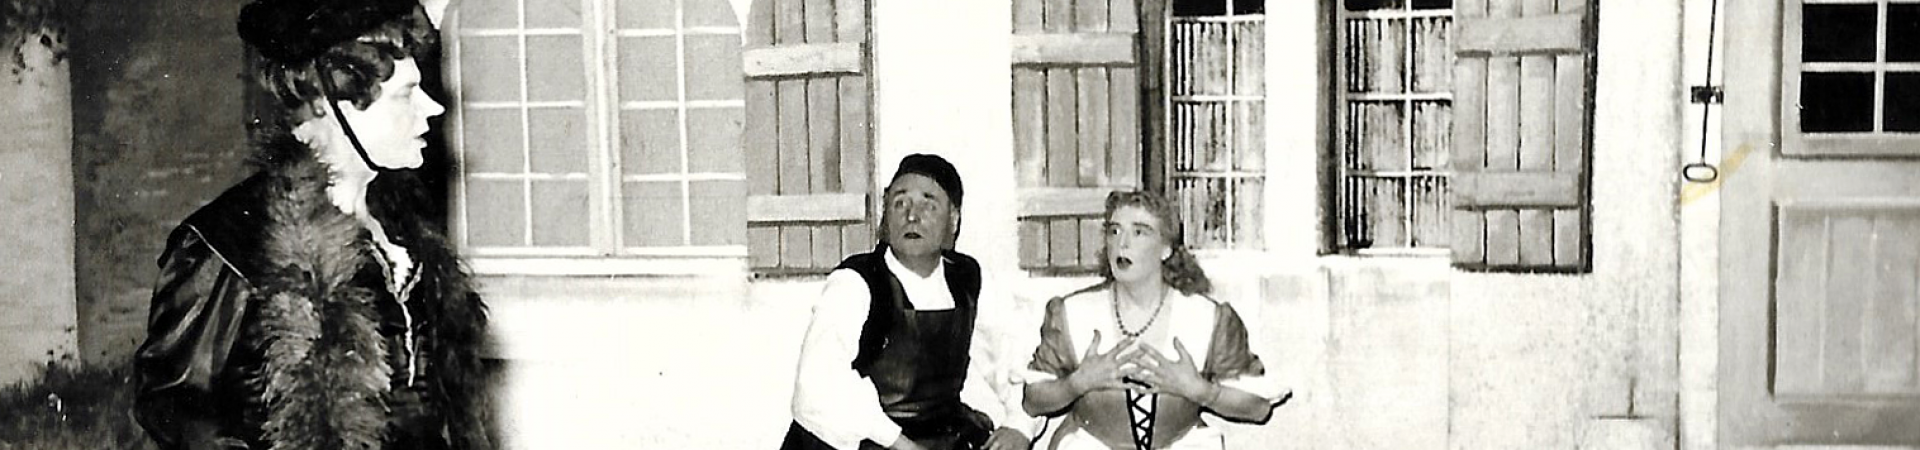 Poßkreeg en Kölle - Divertissementchen 1954 - Solisten in Szene